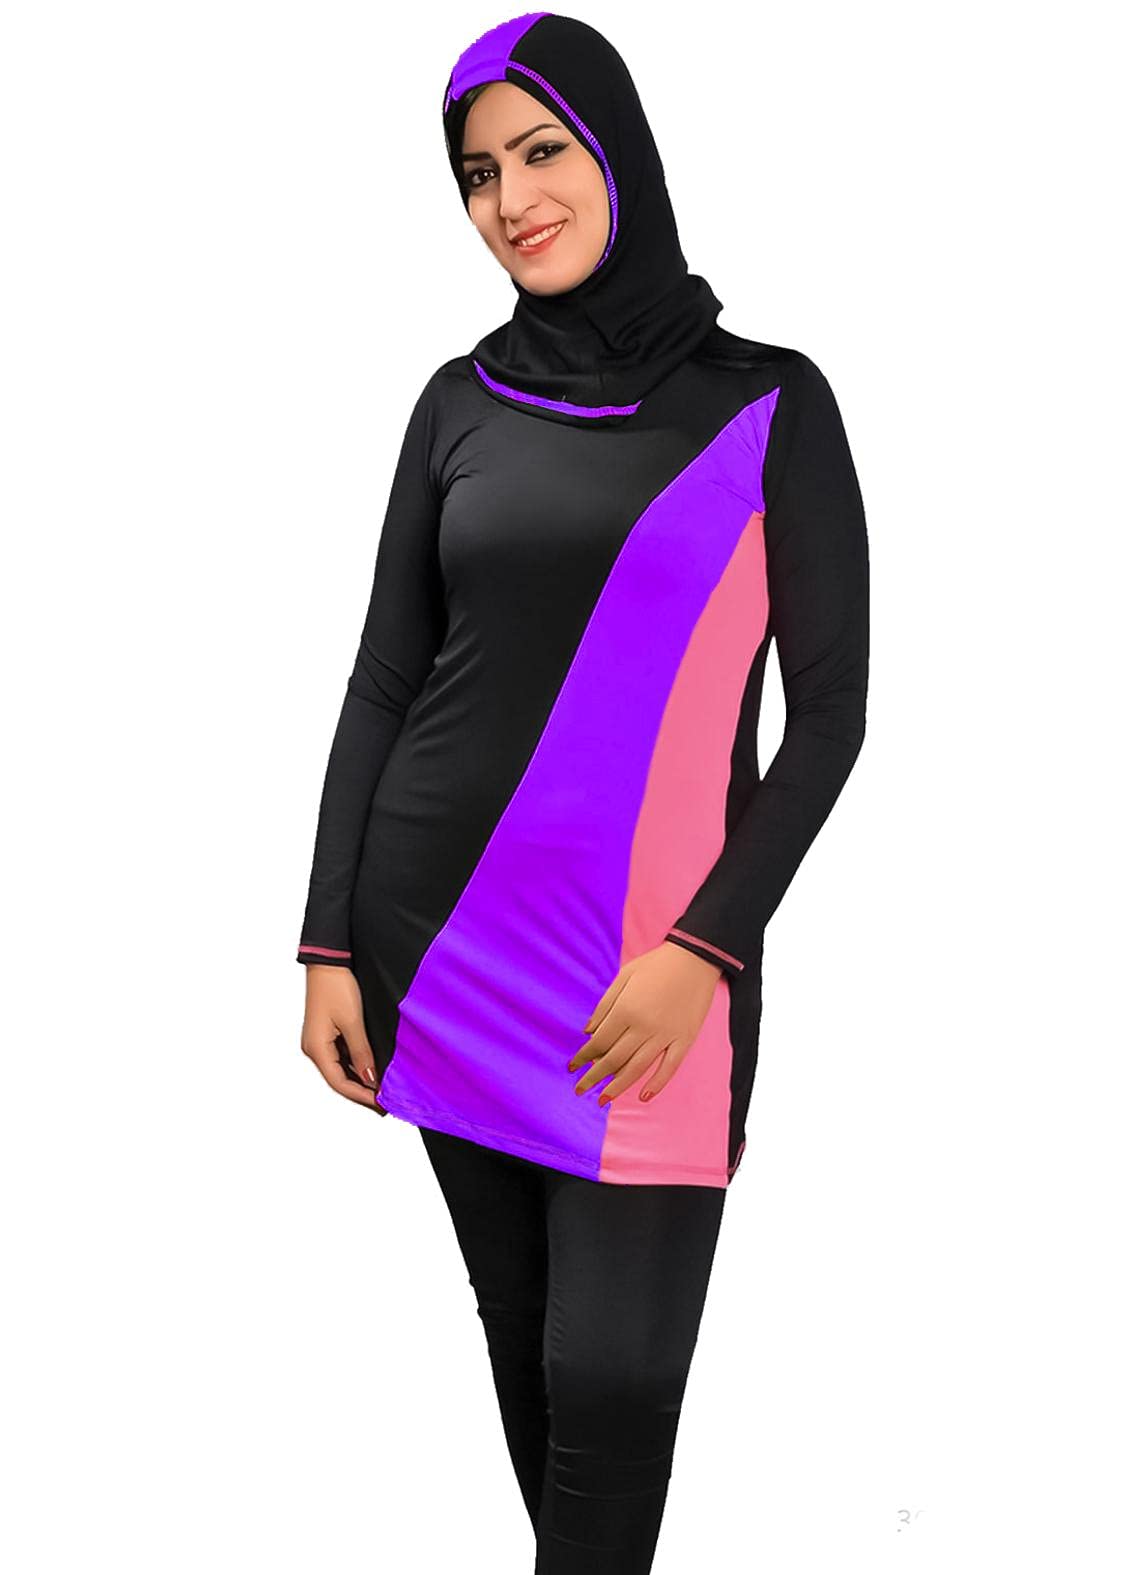 Sharia Burqini Swimwear - Color For Women , 2725618080920 Color Black Size M